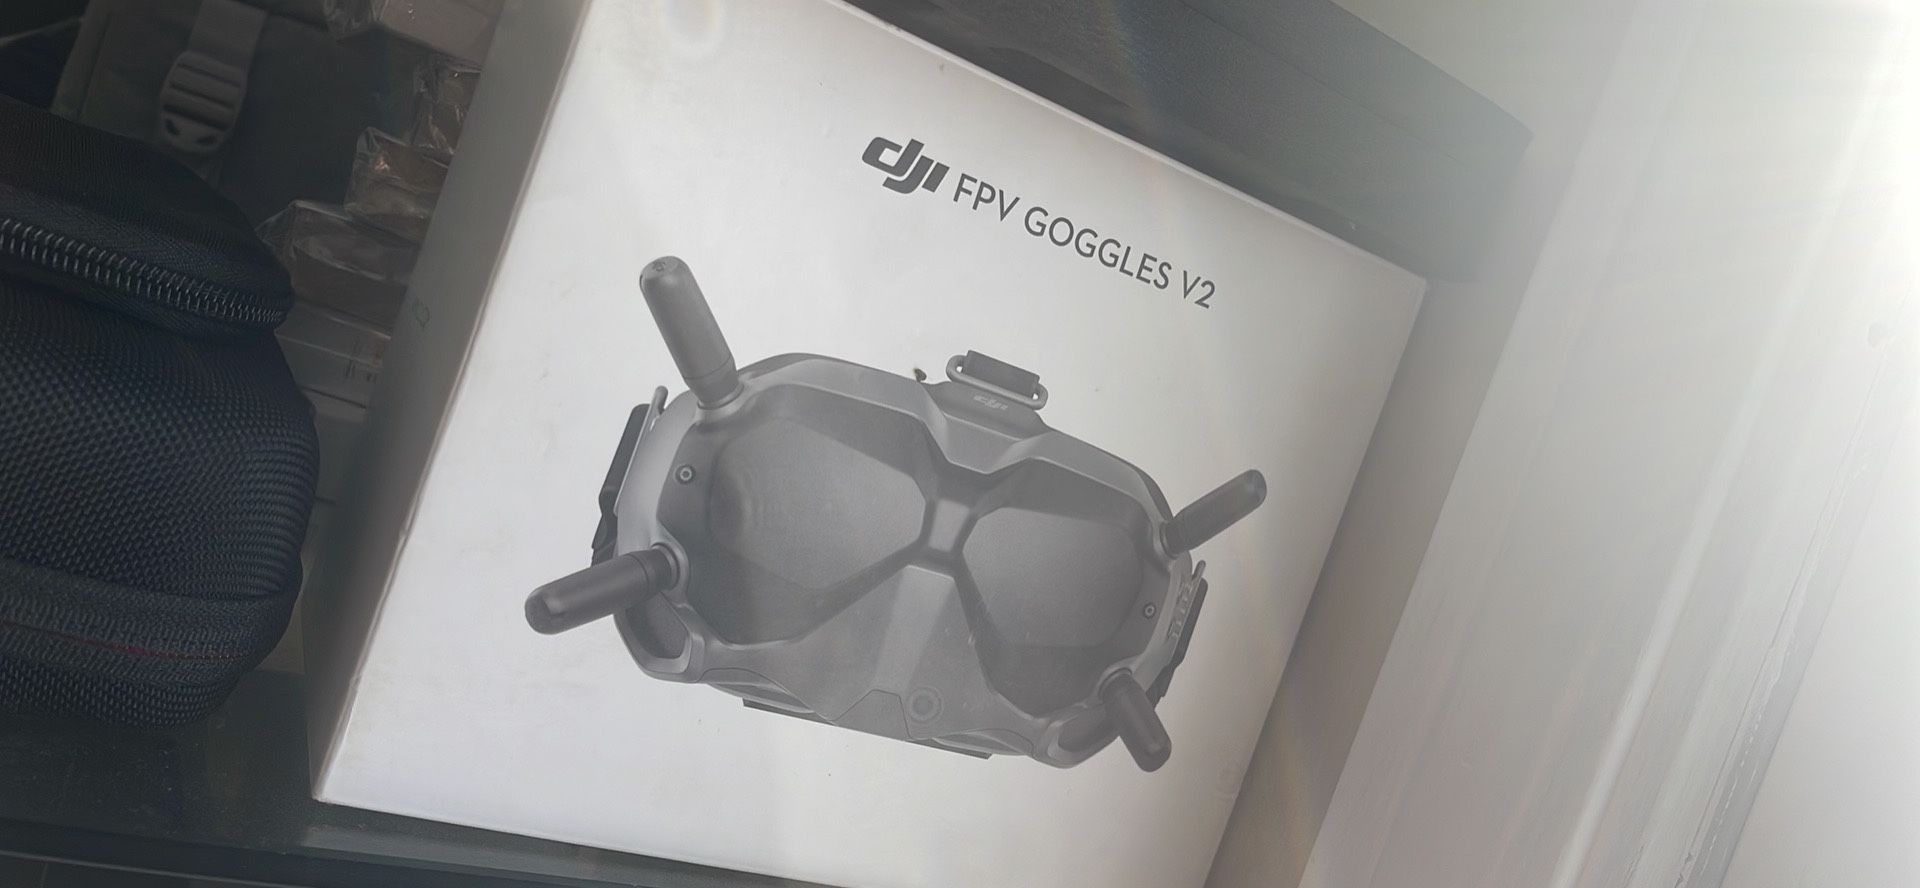 DJI GOGGLES V2 / Drone Goggles FPV 